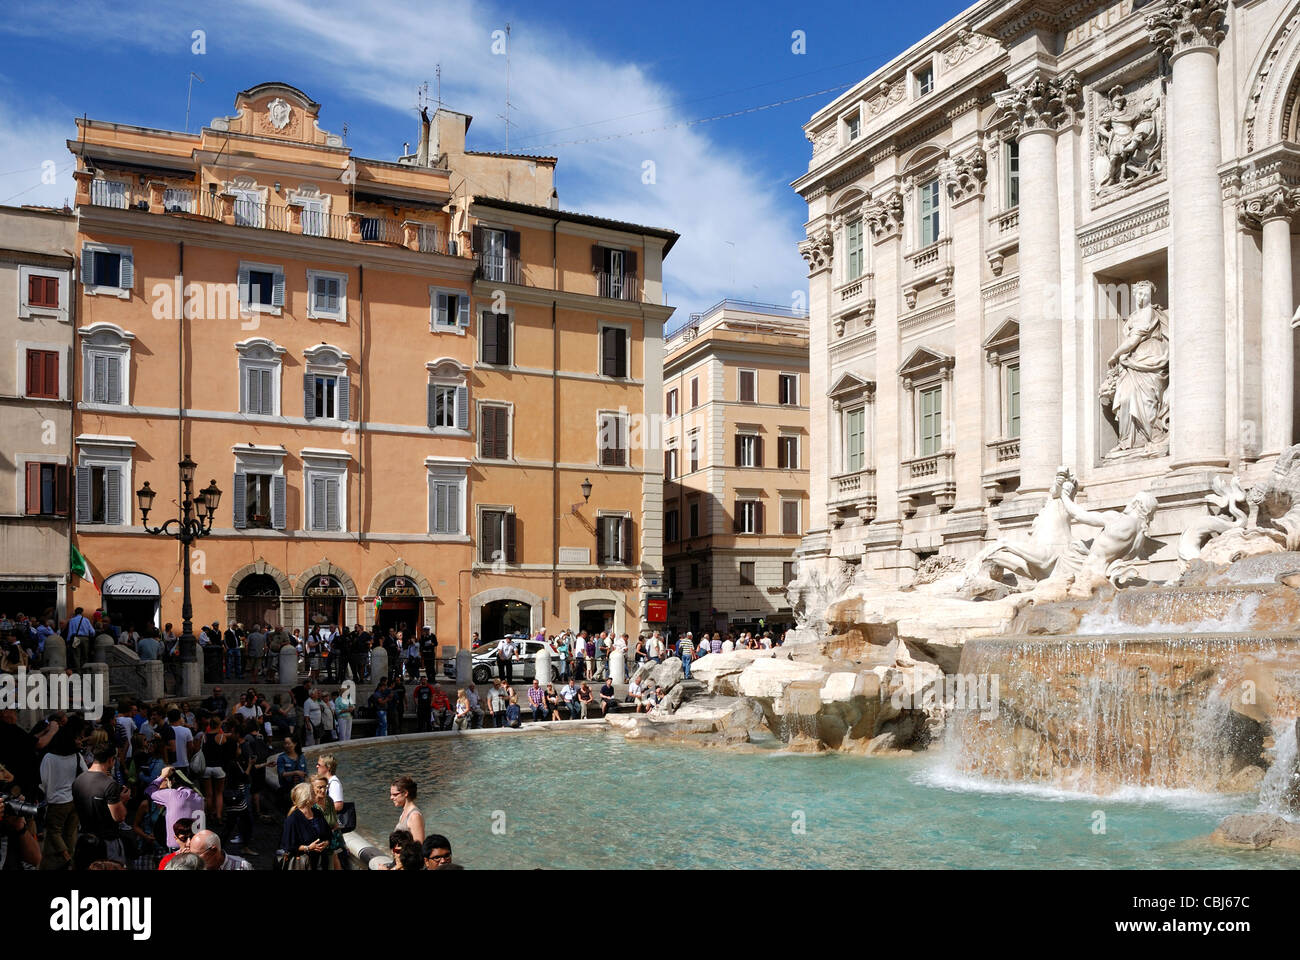 Trevi Fountain at Piazza di Trevi in Rome - Fontana di Trevi. Stock Photo